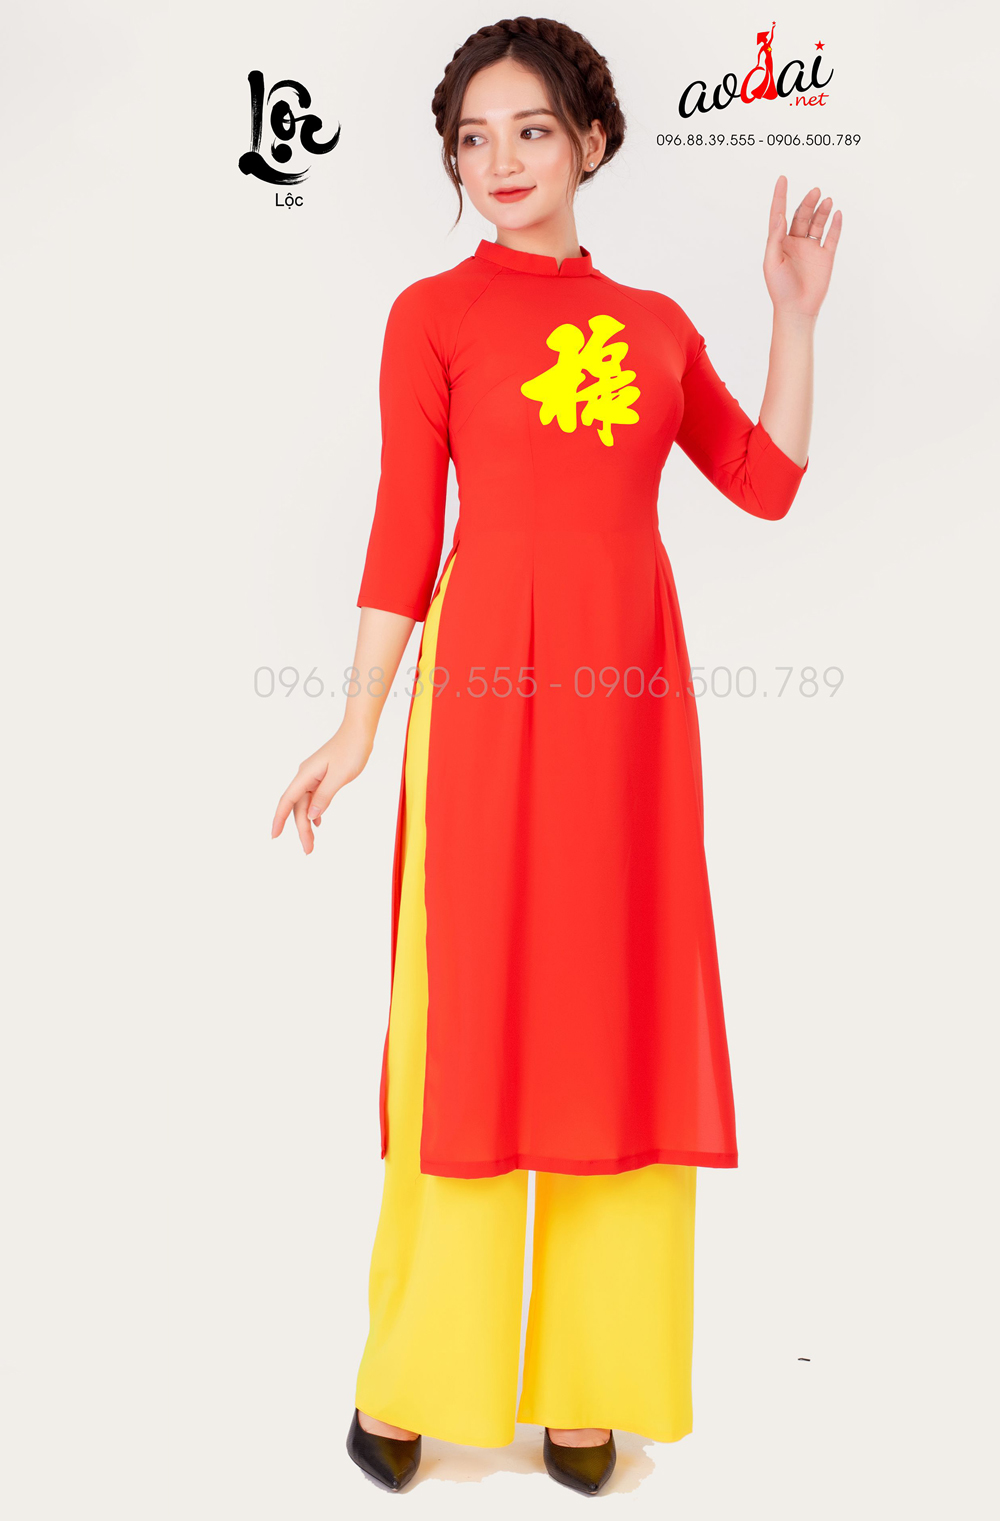 Áo dài nữ màu đỏ in chữ Lộc